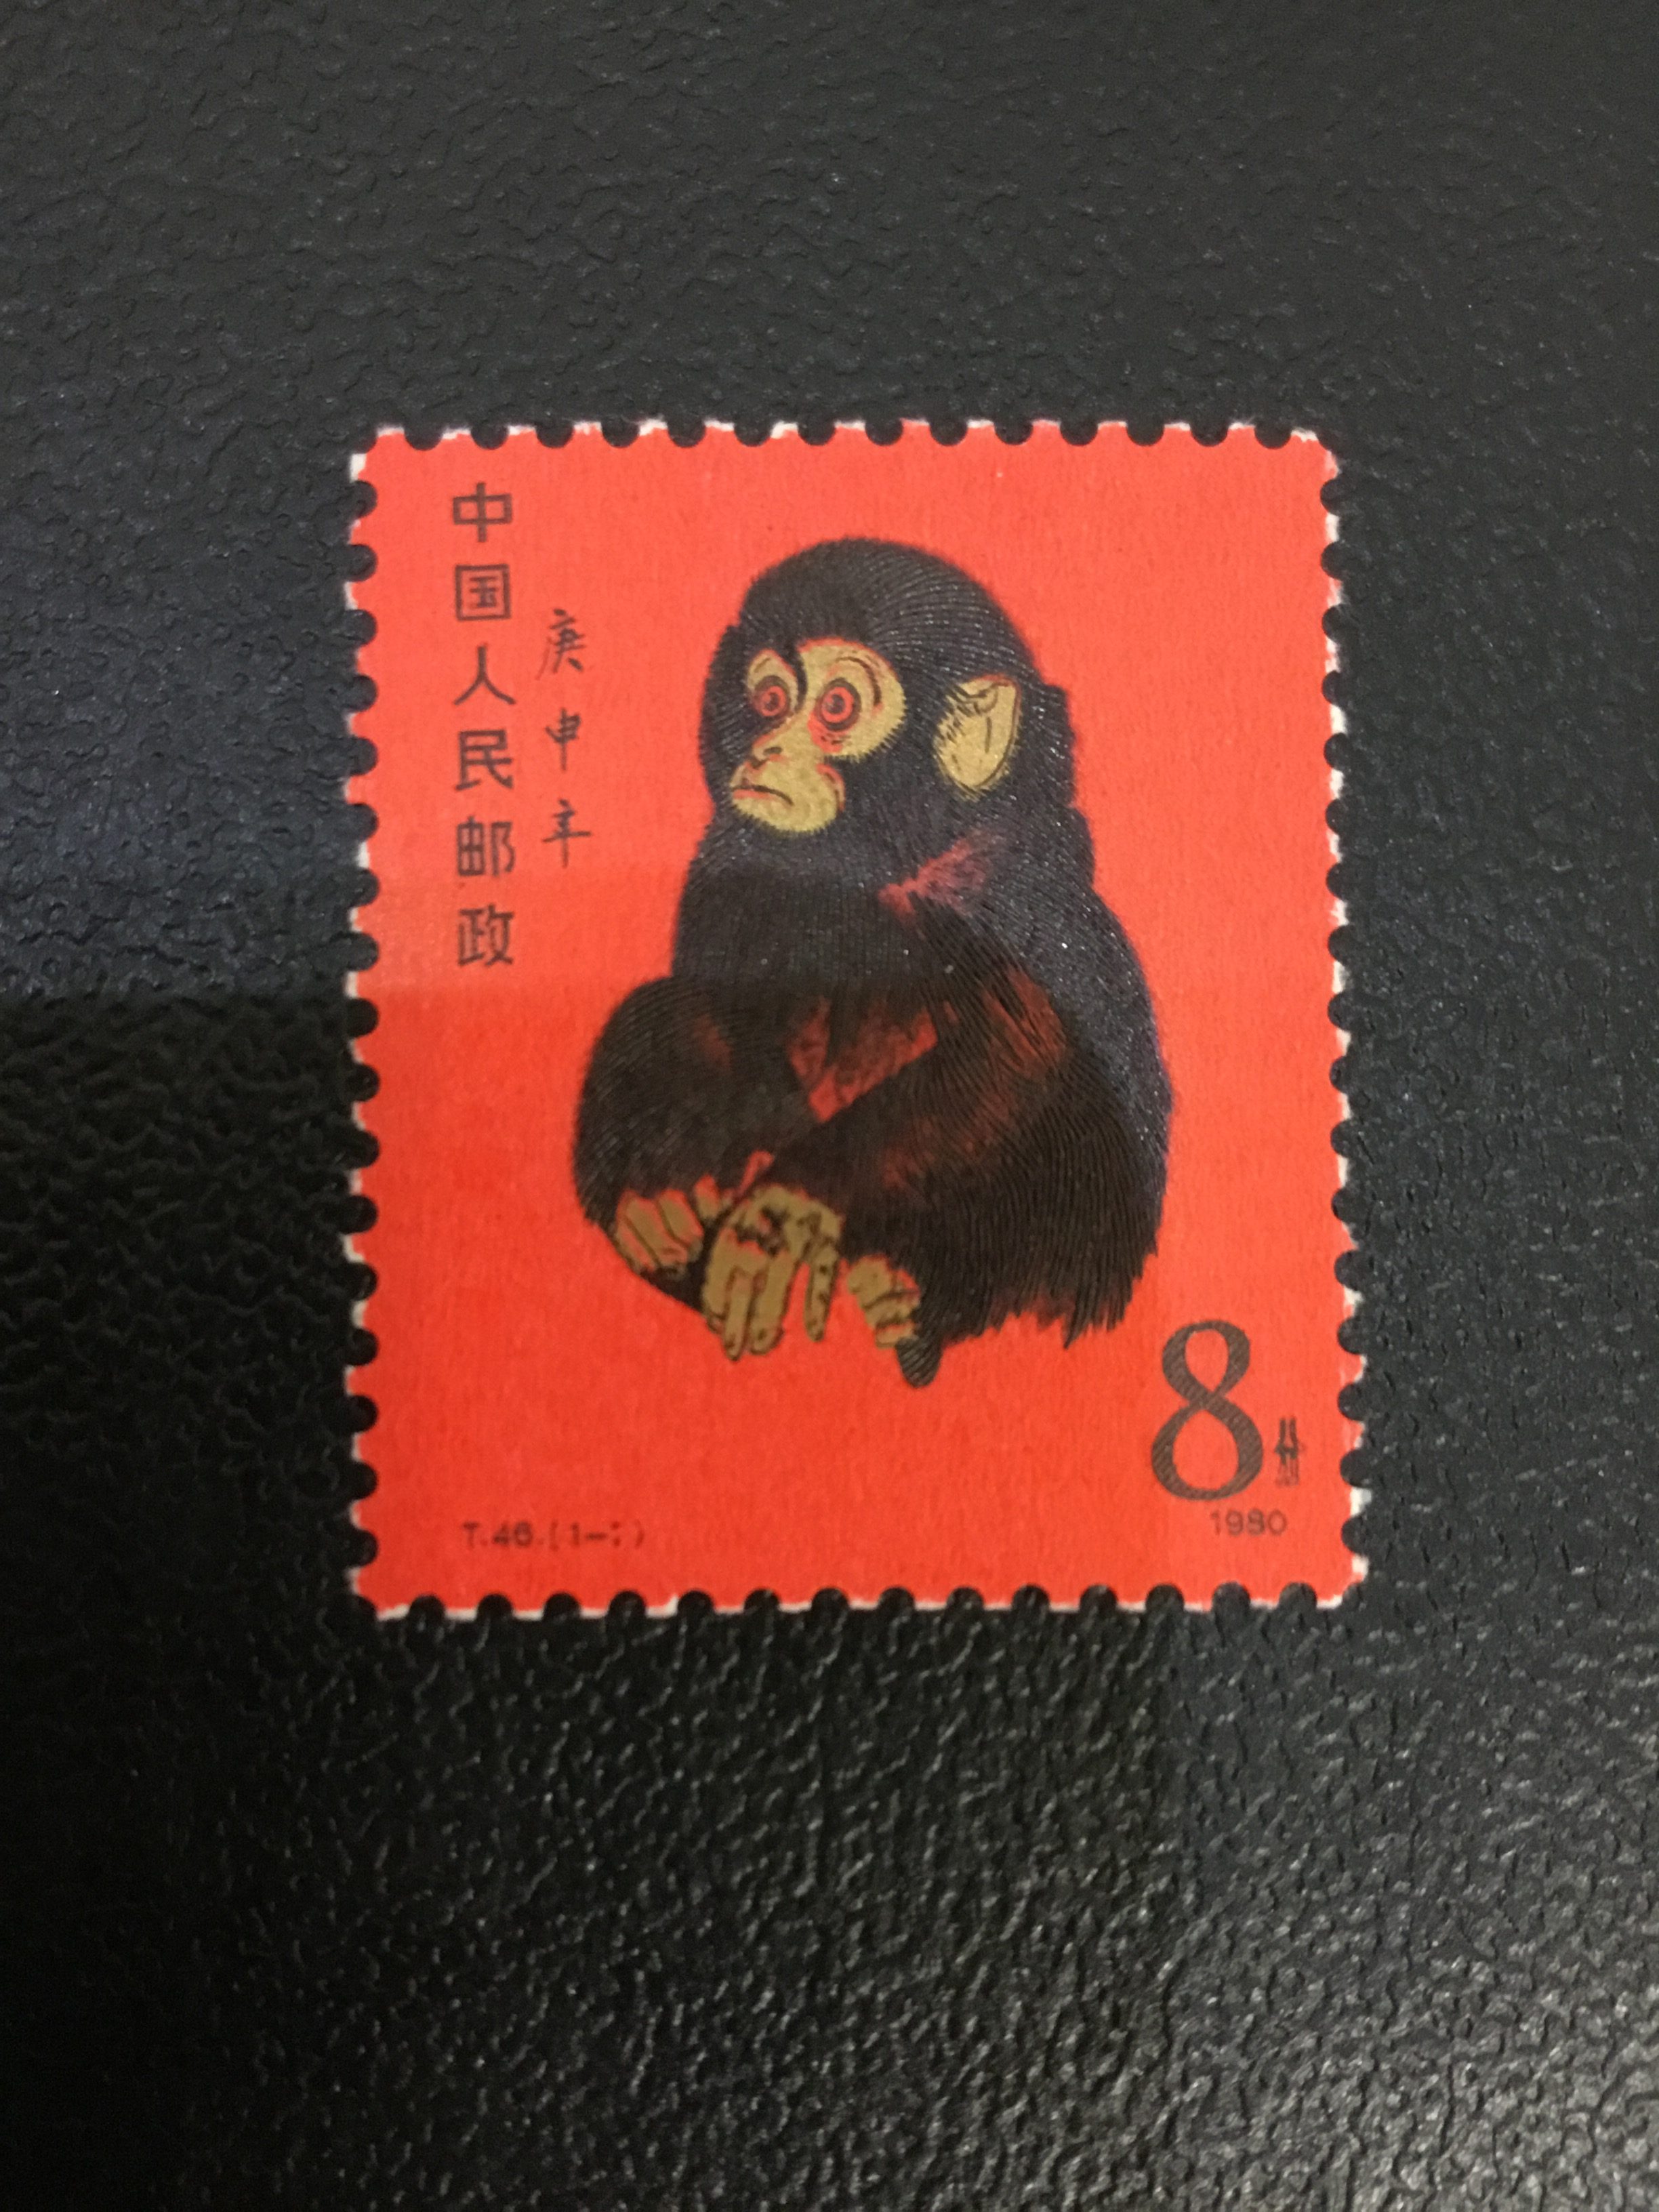 「赤猿 買取 大吉 ブログ」の画像検索結果